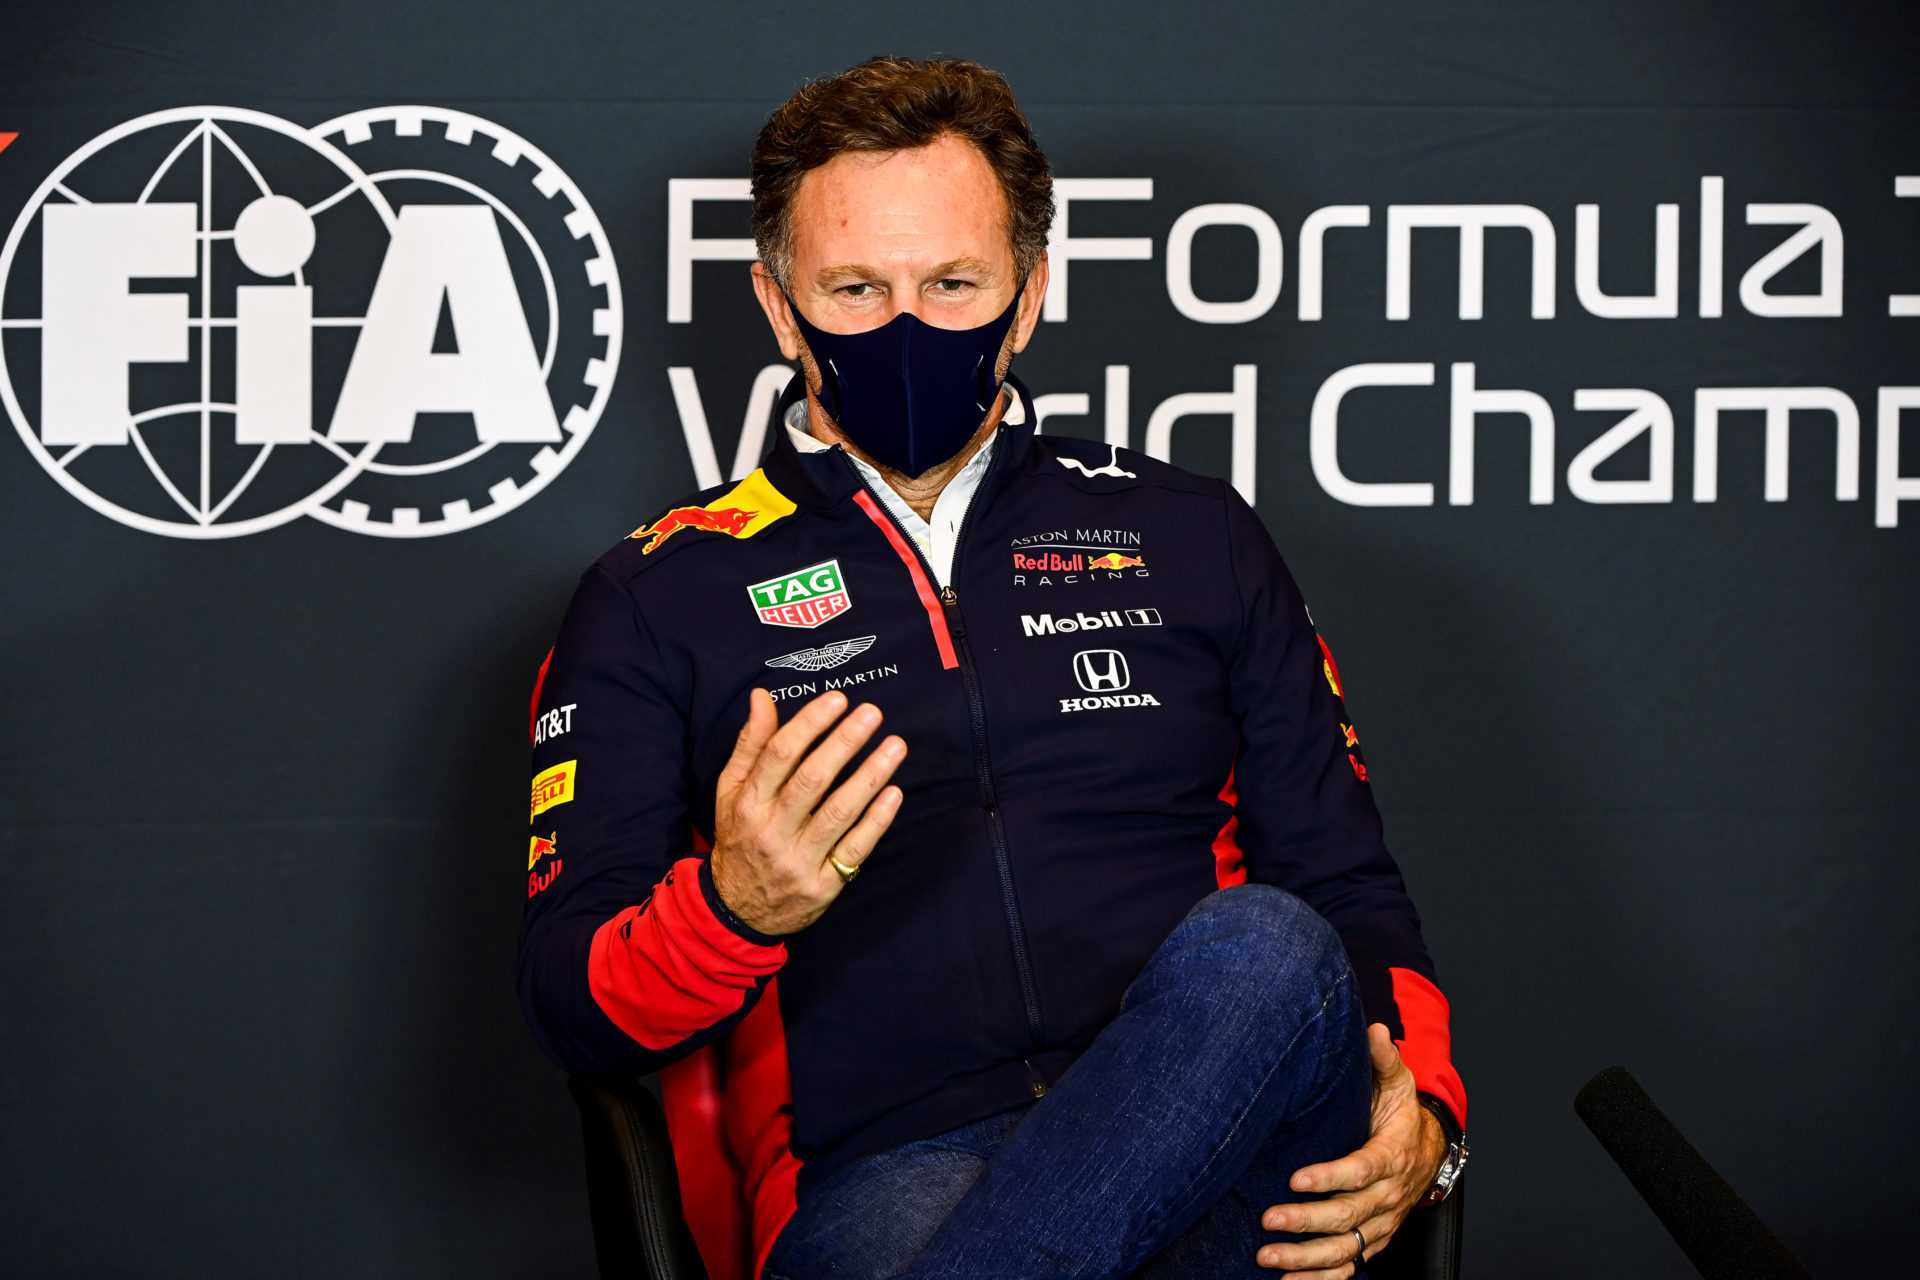 Hamilton et Vettel évitent les «risques inutiles» que prendrait Verstappen: Red Bull Boss Horner